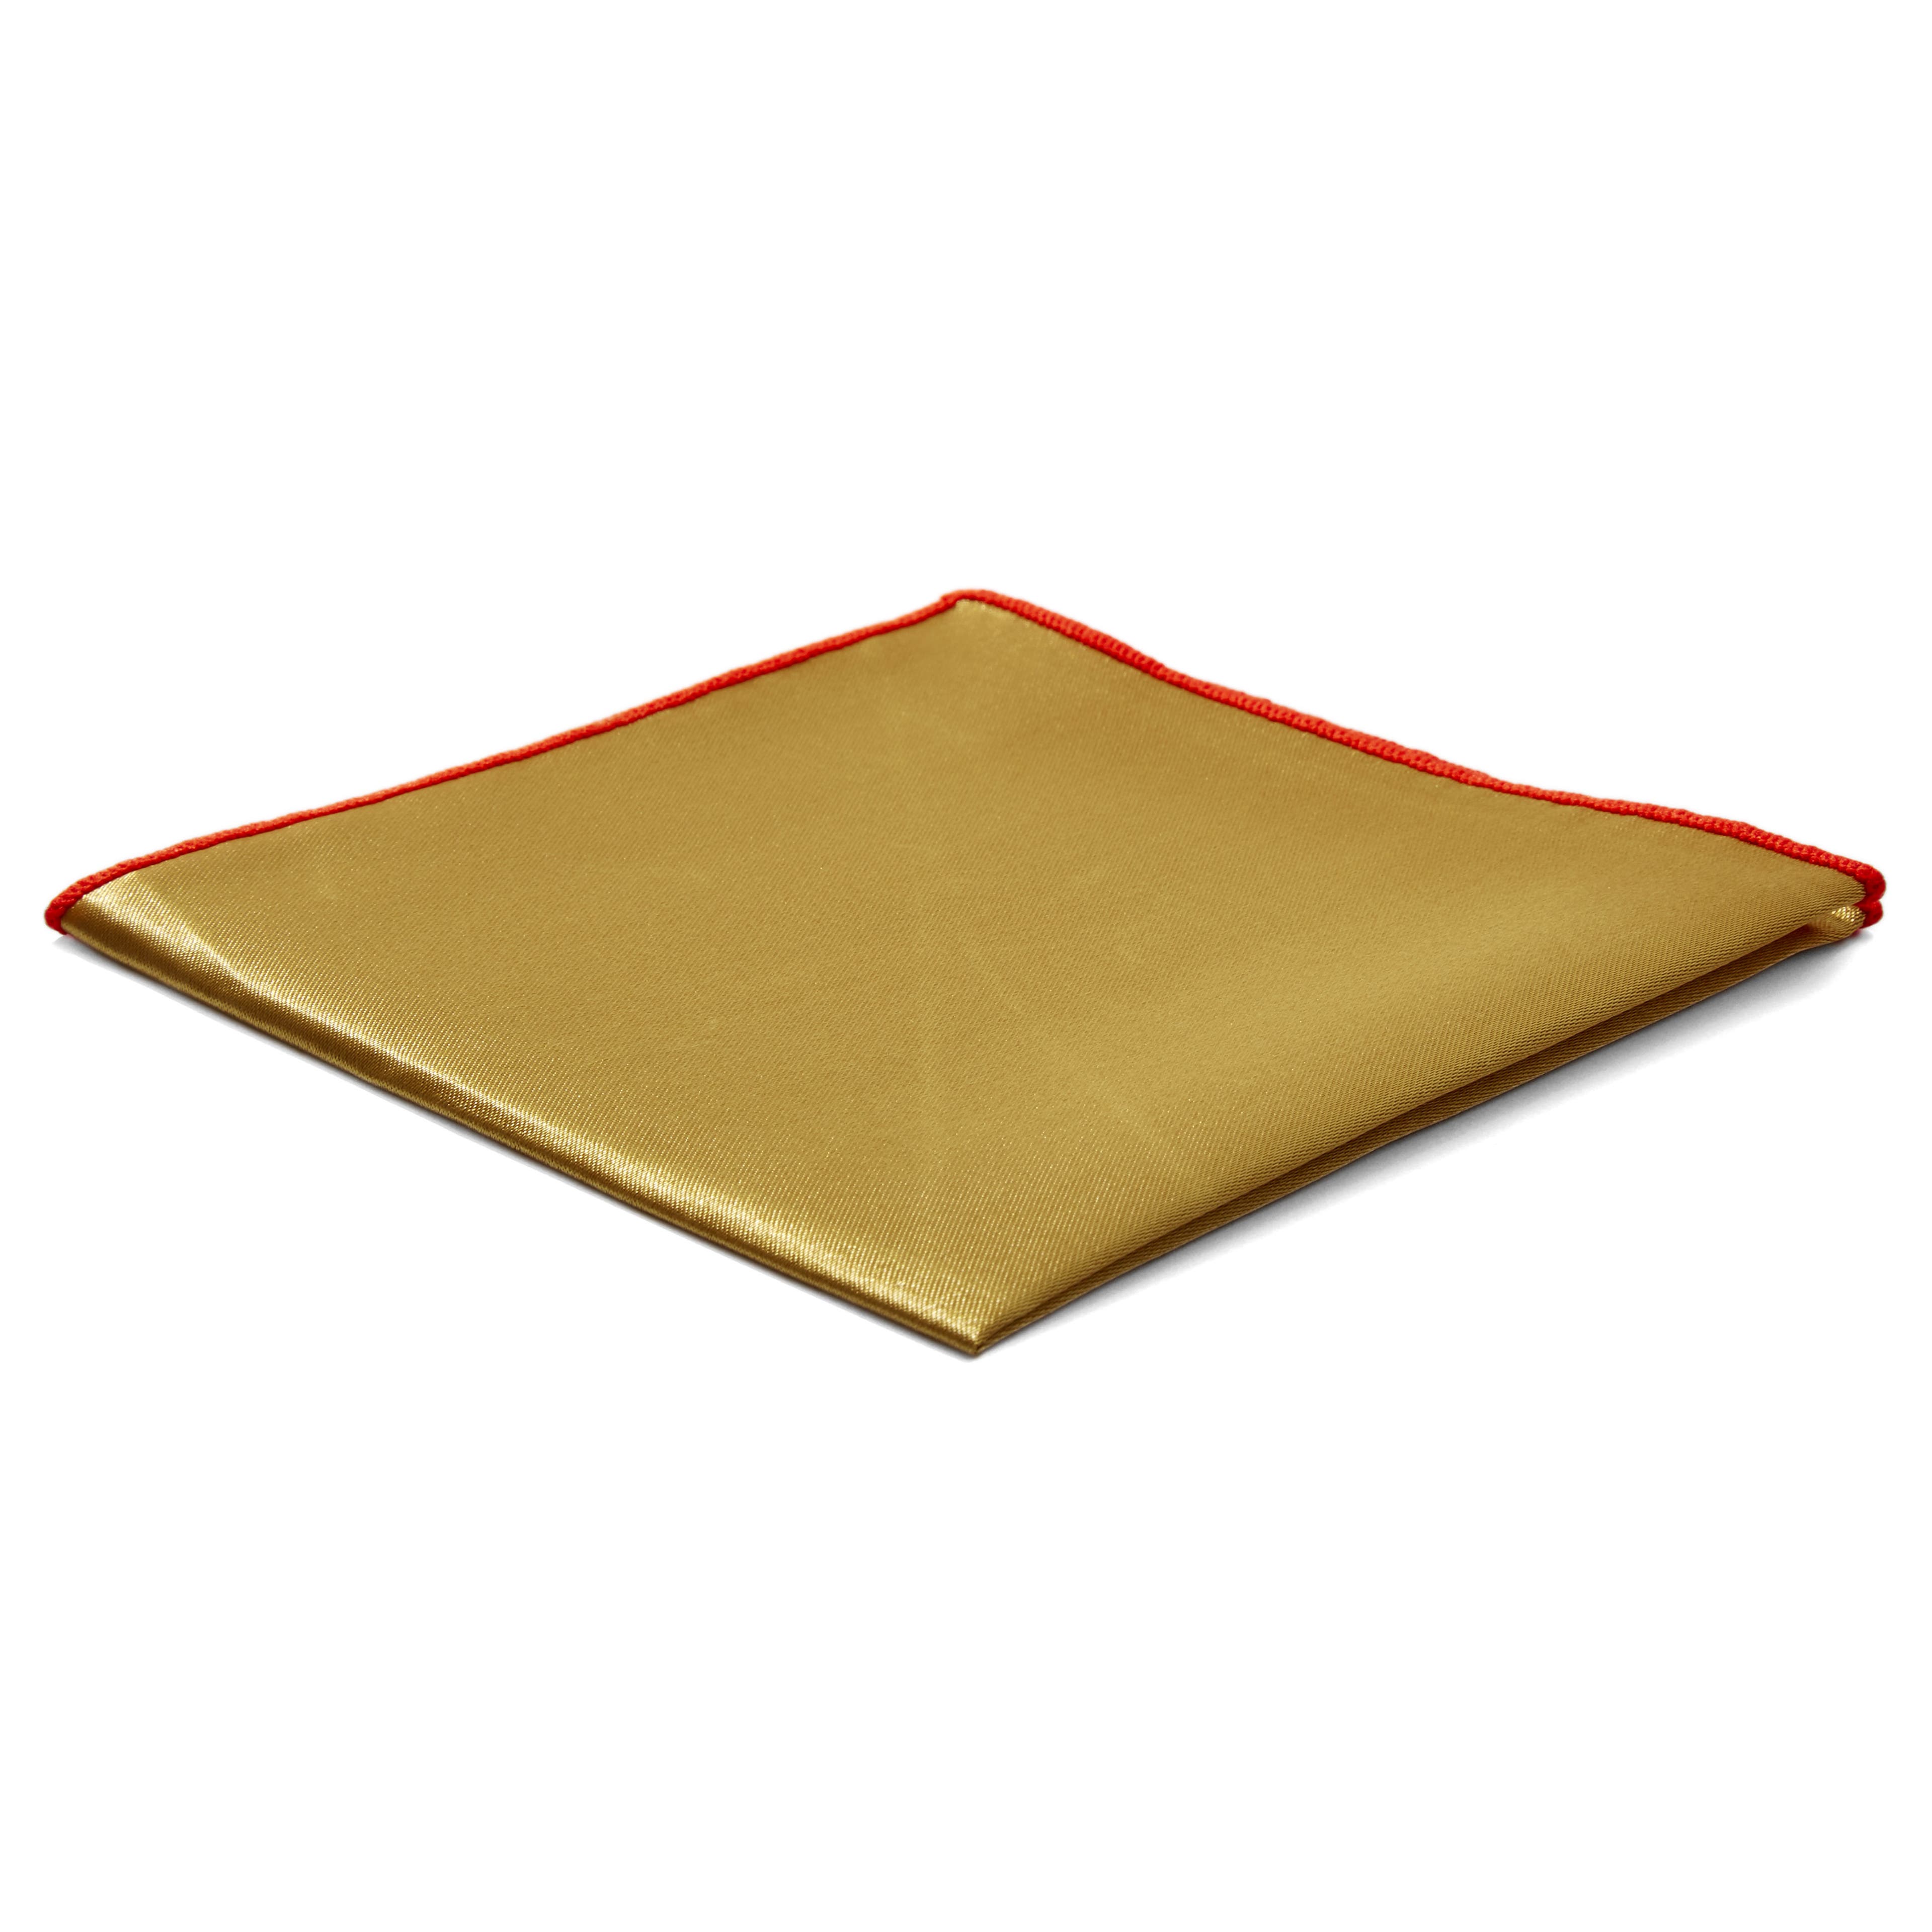 Χρυσαφί Γυαλιστερό Τετράγωνο Μαντήλι Τσέπης Shiny Gold Basic